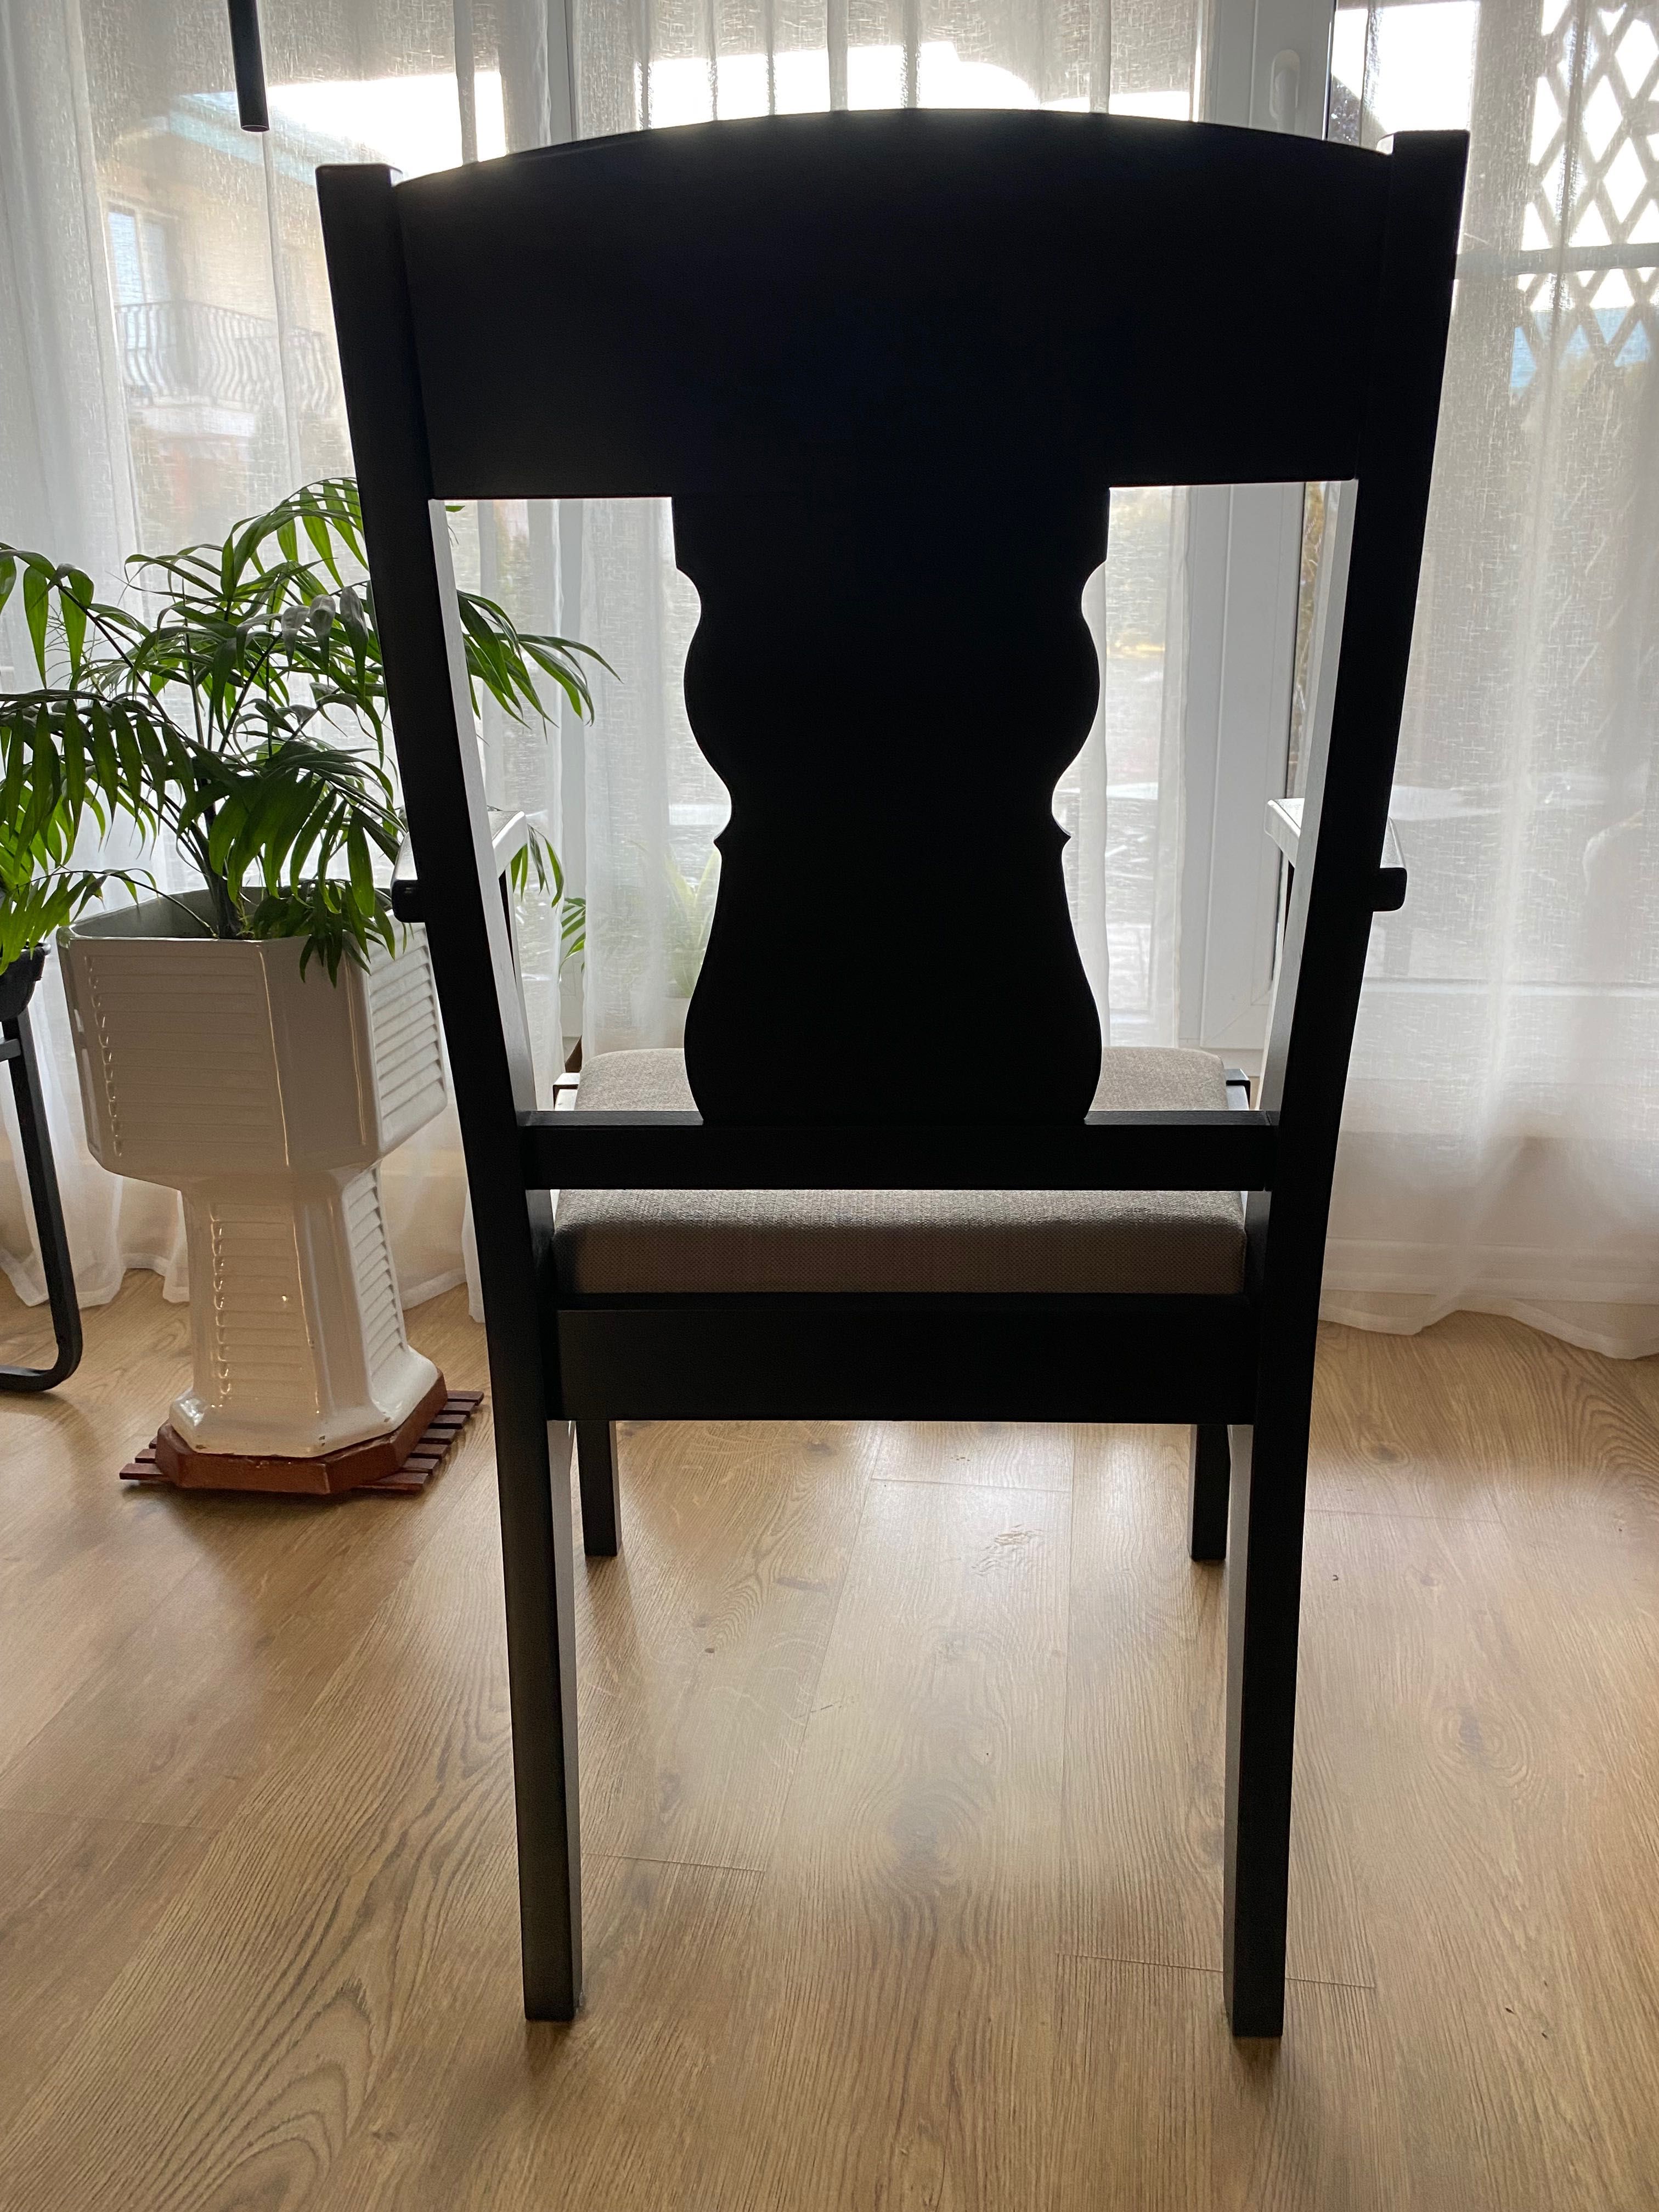 4 scaune cu brate IKEA din familia Ingatorp